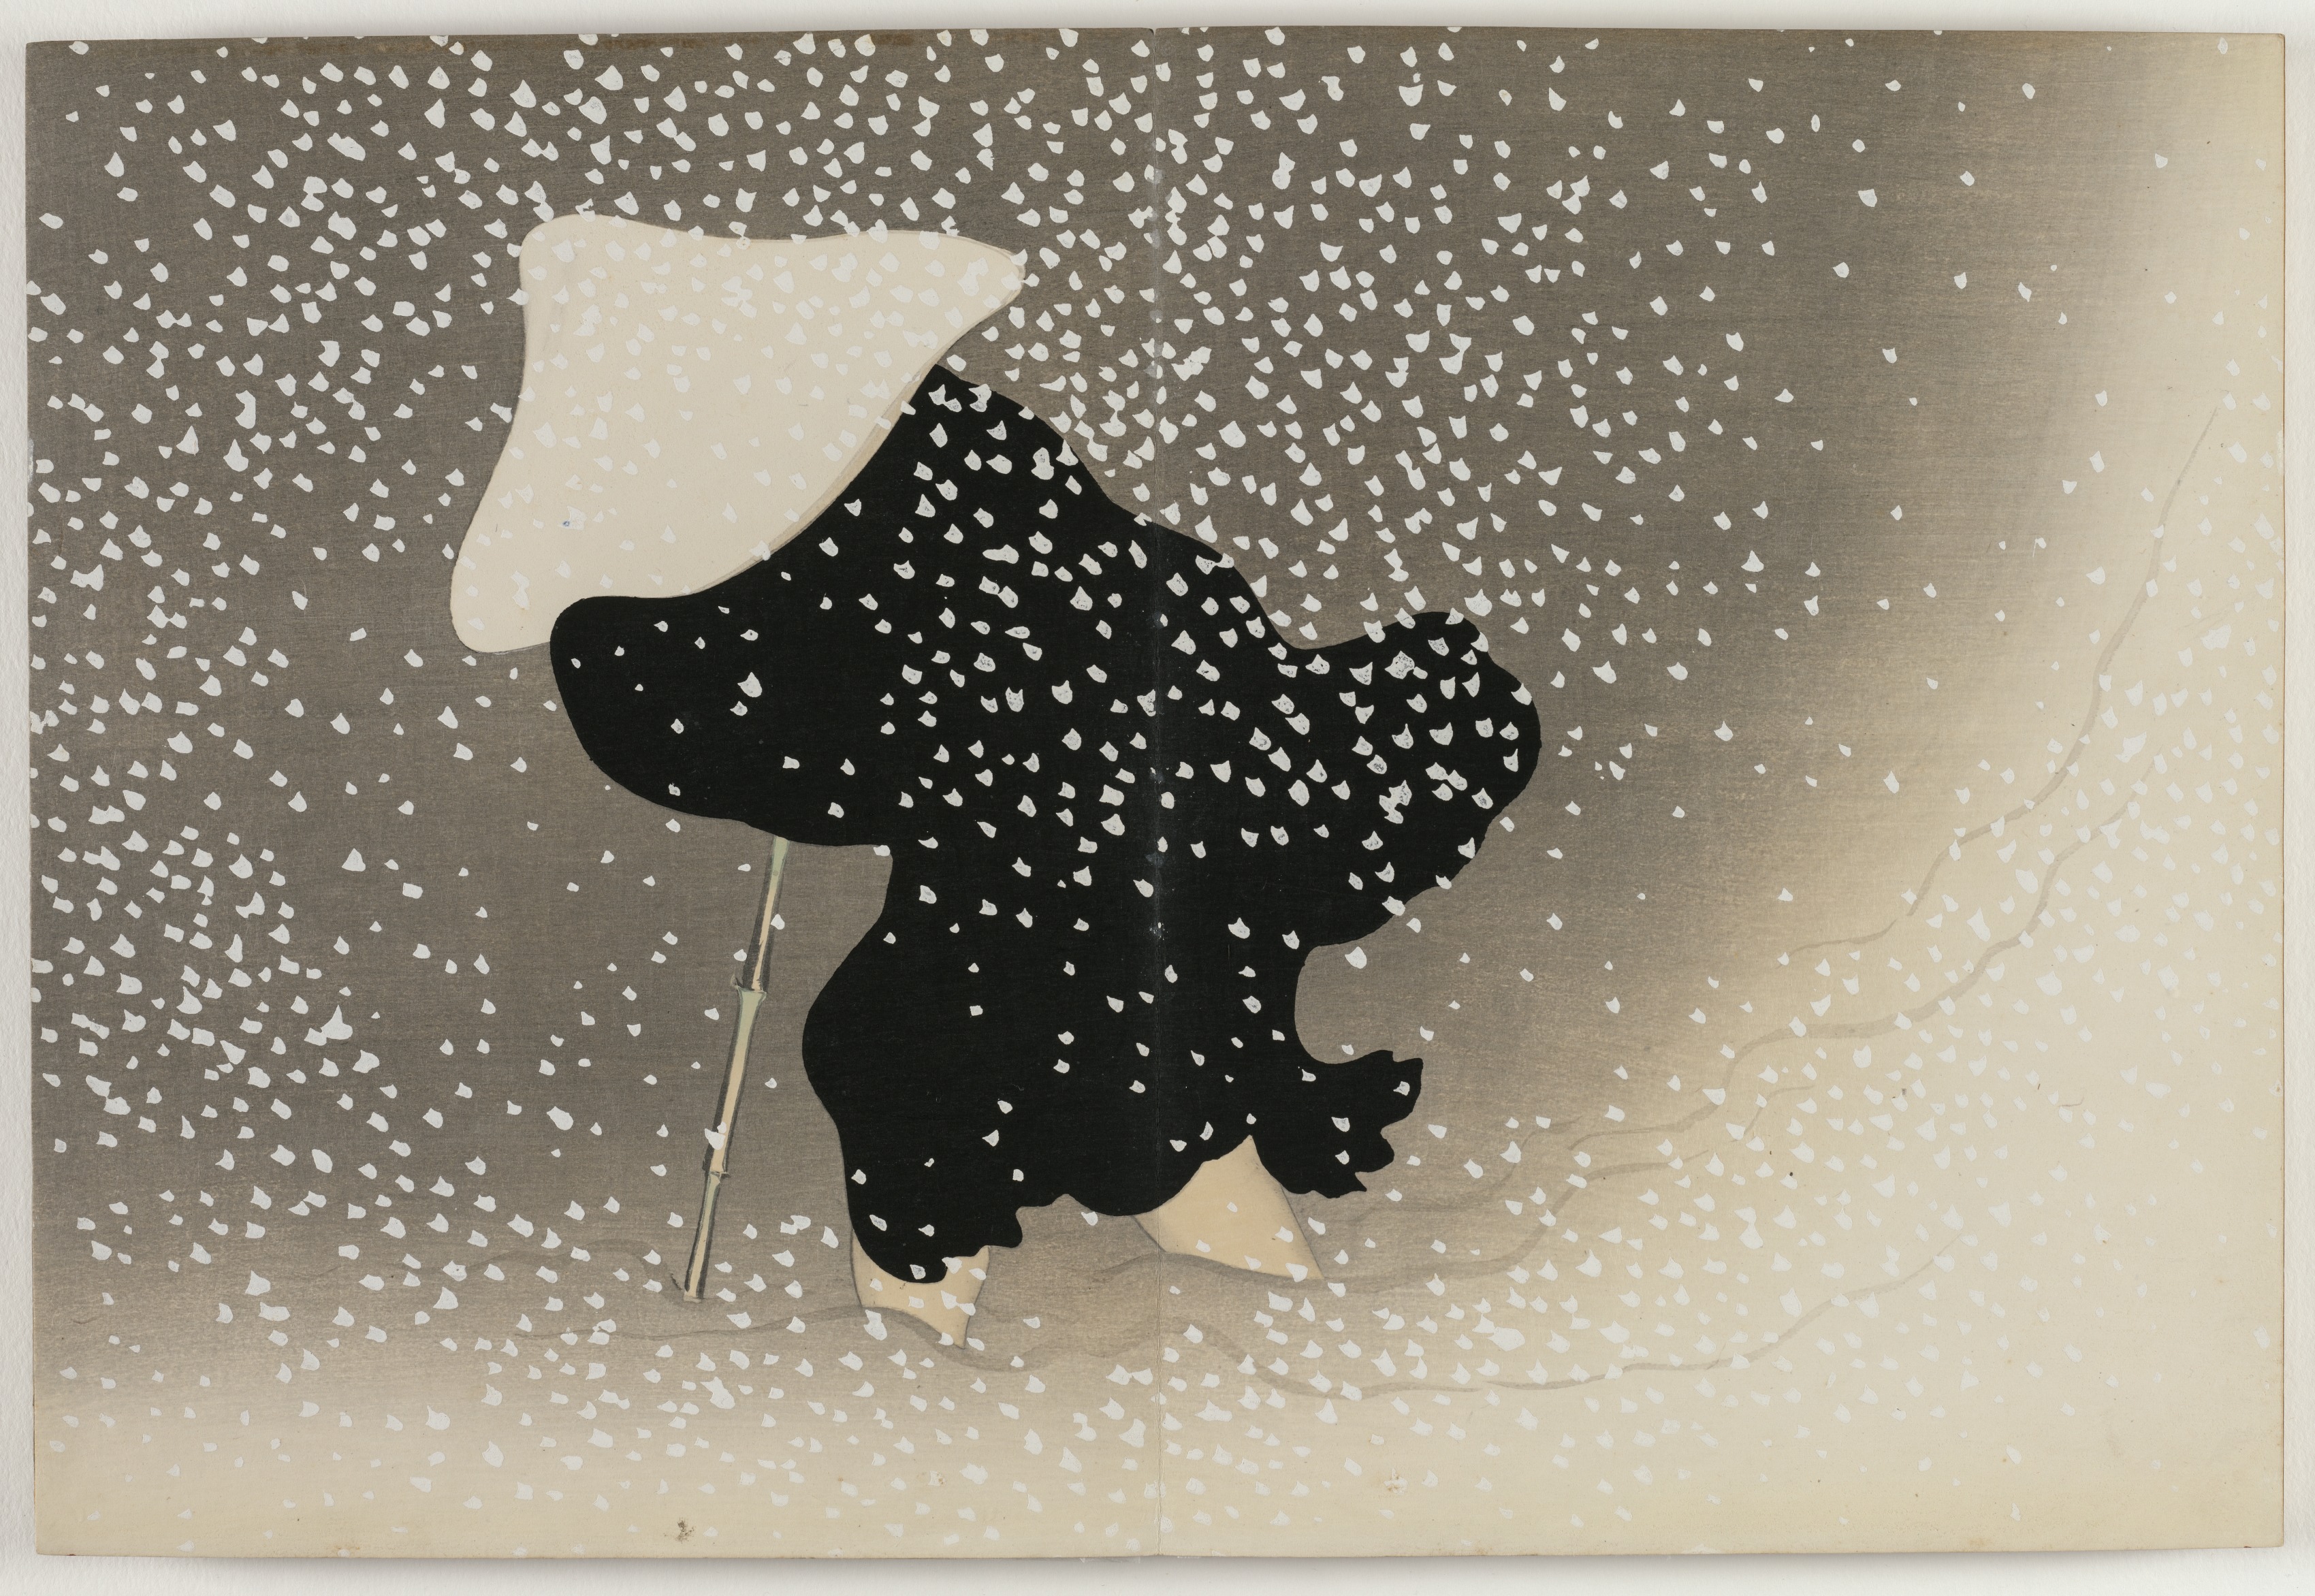 Flores de Cem Mundos: Neve Rodopiante by Kamisaka Sekka - 1909-10 - 29.9 x 22.1 cm 